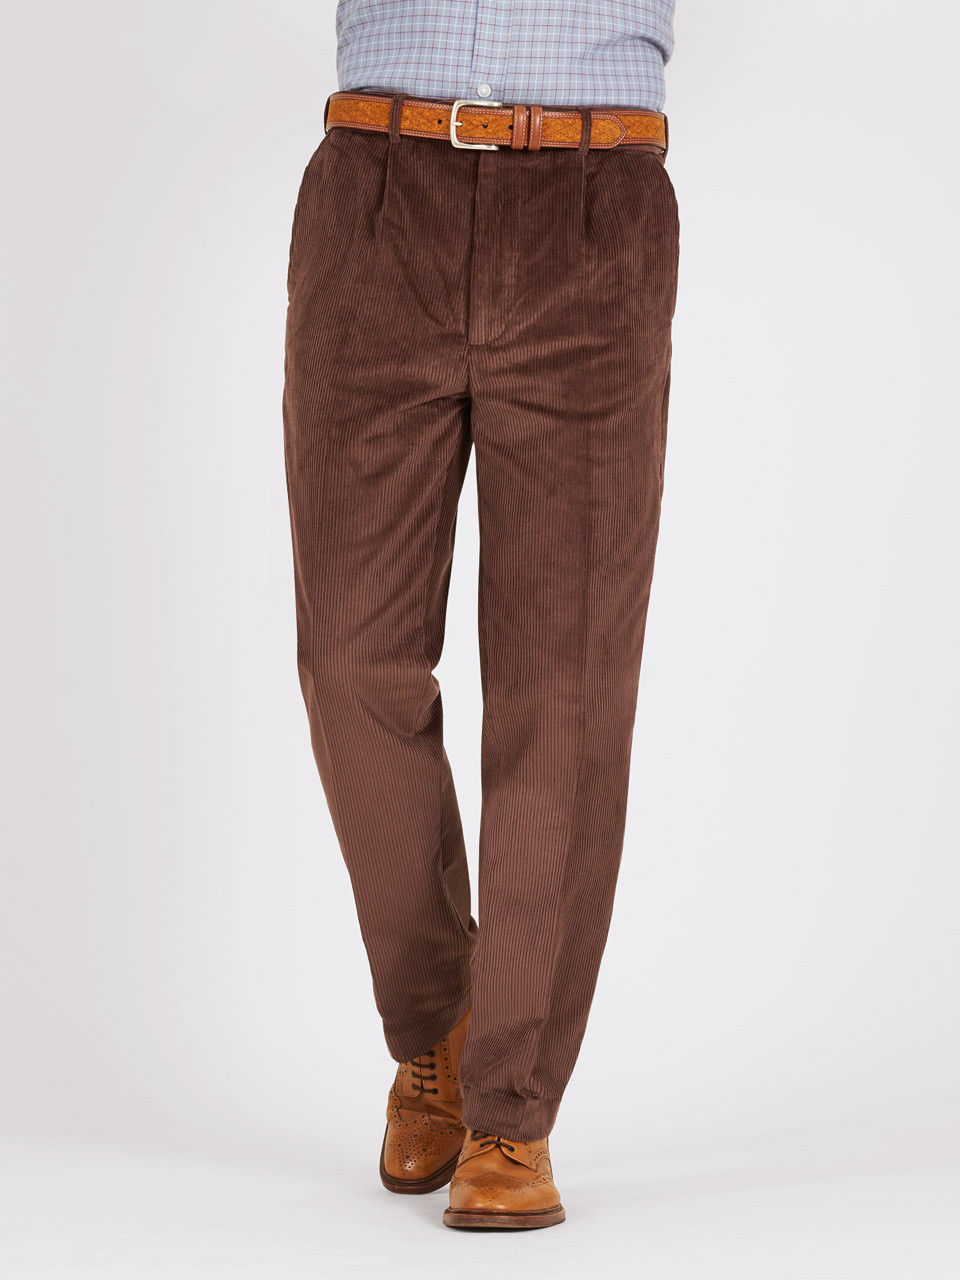 Monet Tuckup Pleated Brown Corduroy Pants